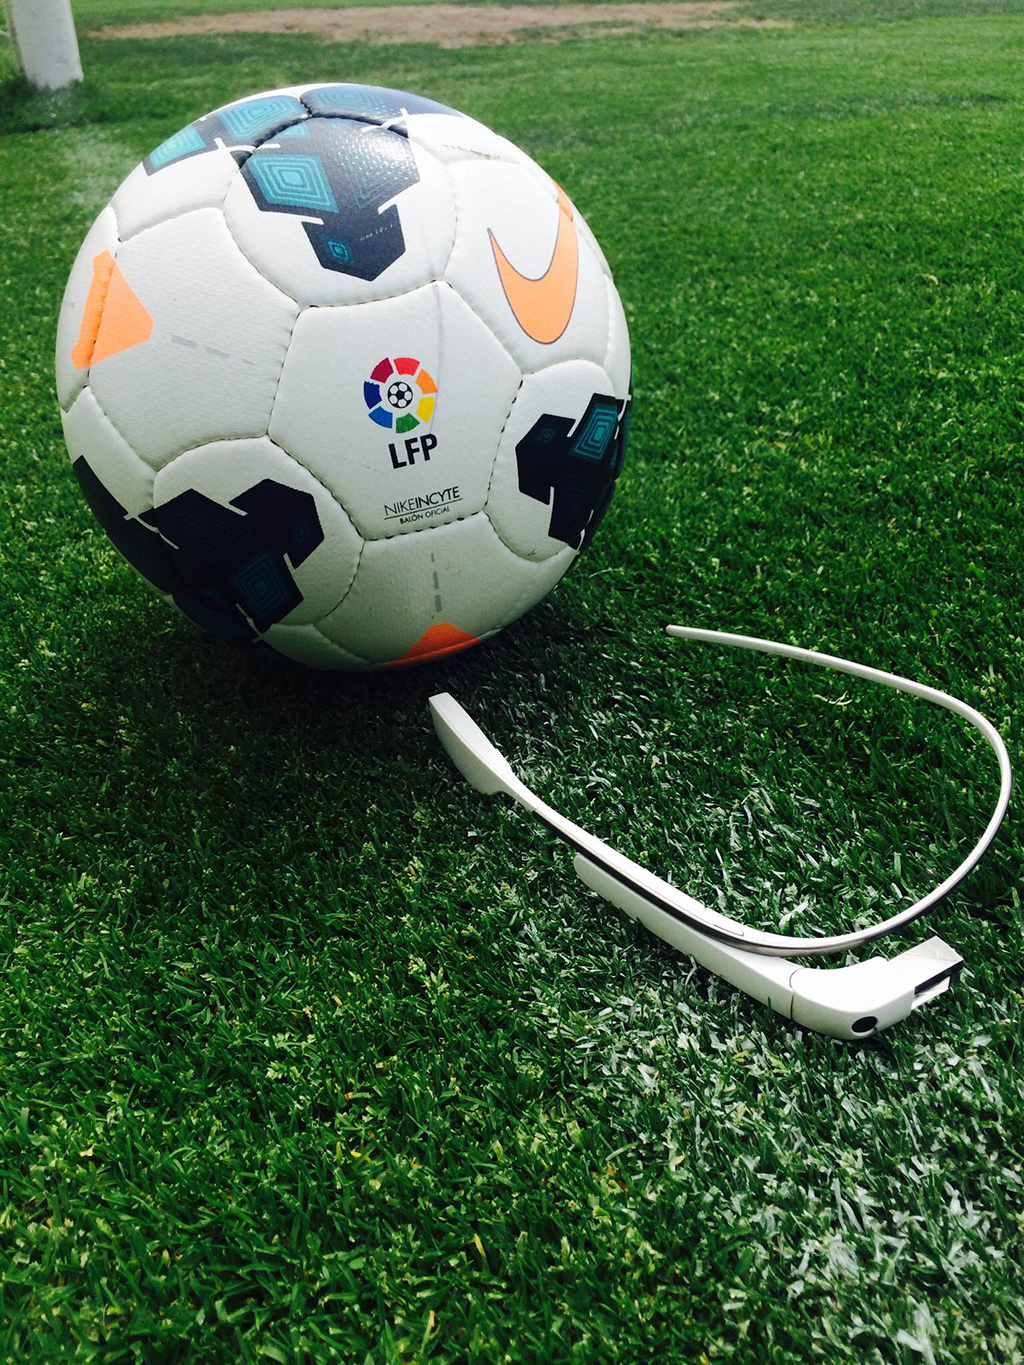 Google Glass llega a los campos de fútbol para ayudar a los entrenadores las jugadas en los